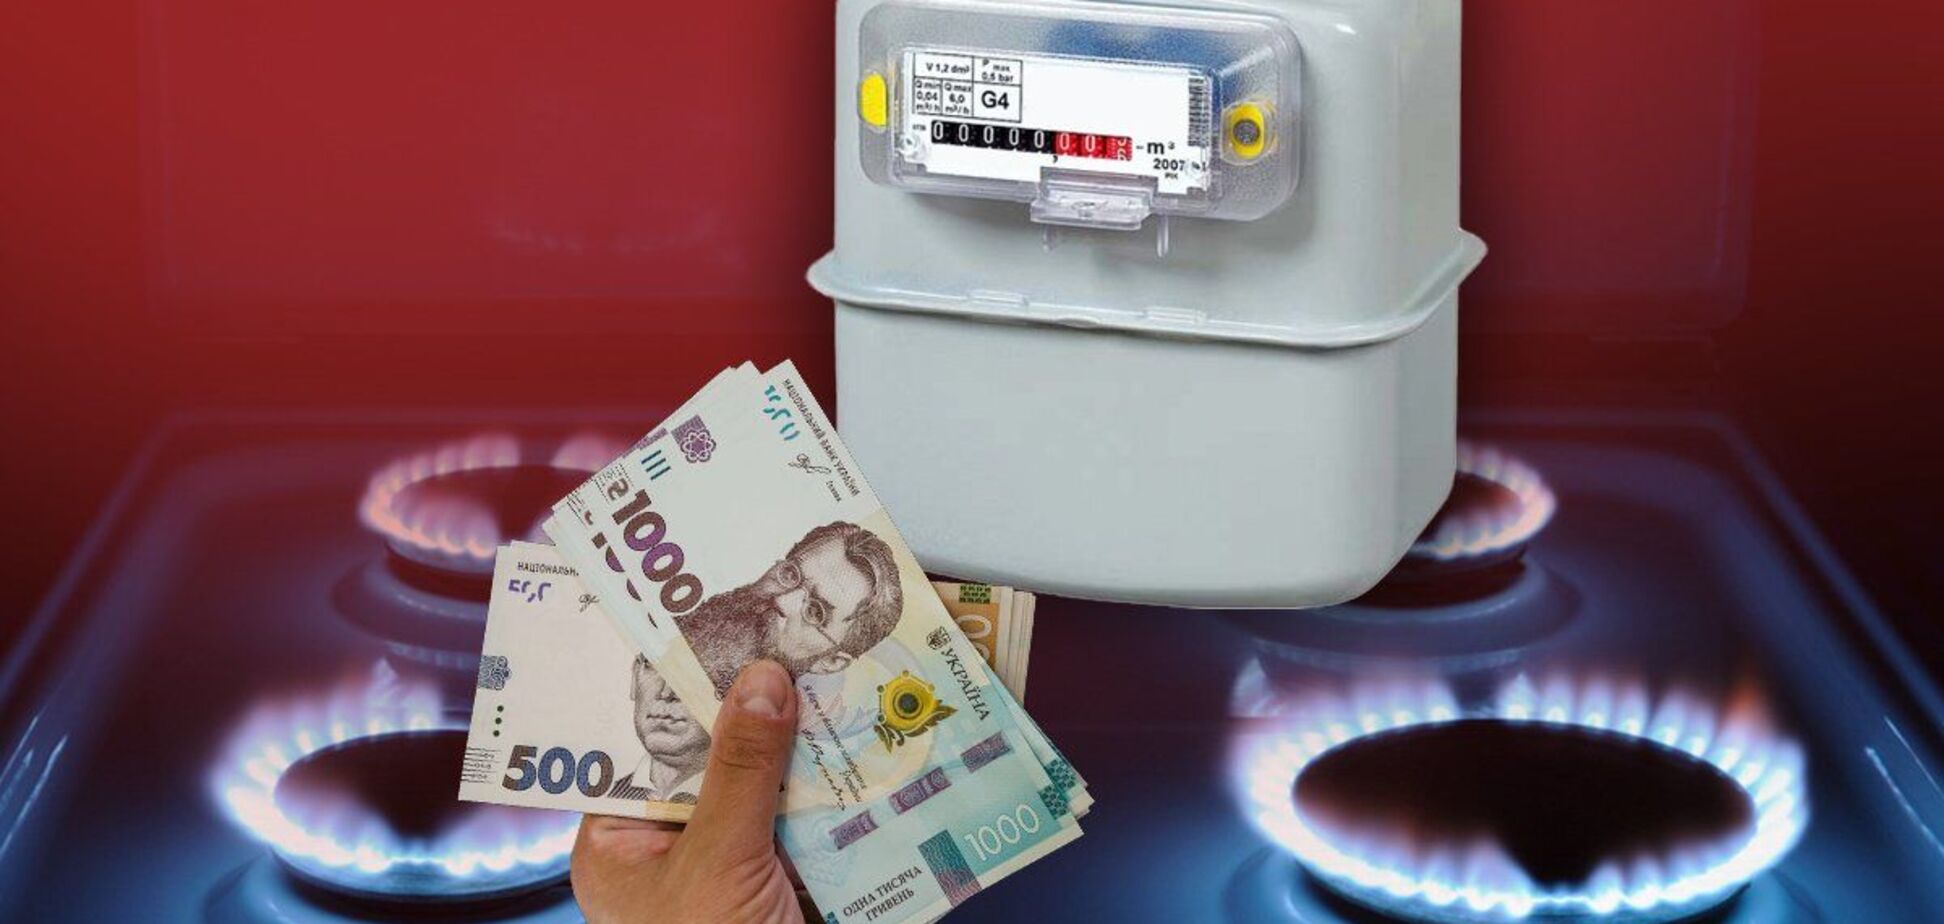 Украинцев без счетчиков могут отключить от газа: как получить прибор бесплатно